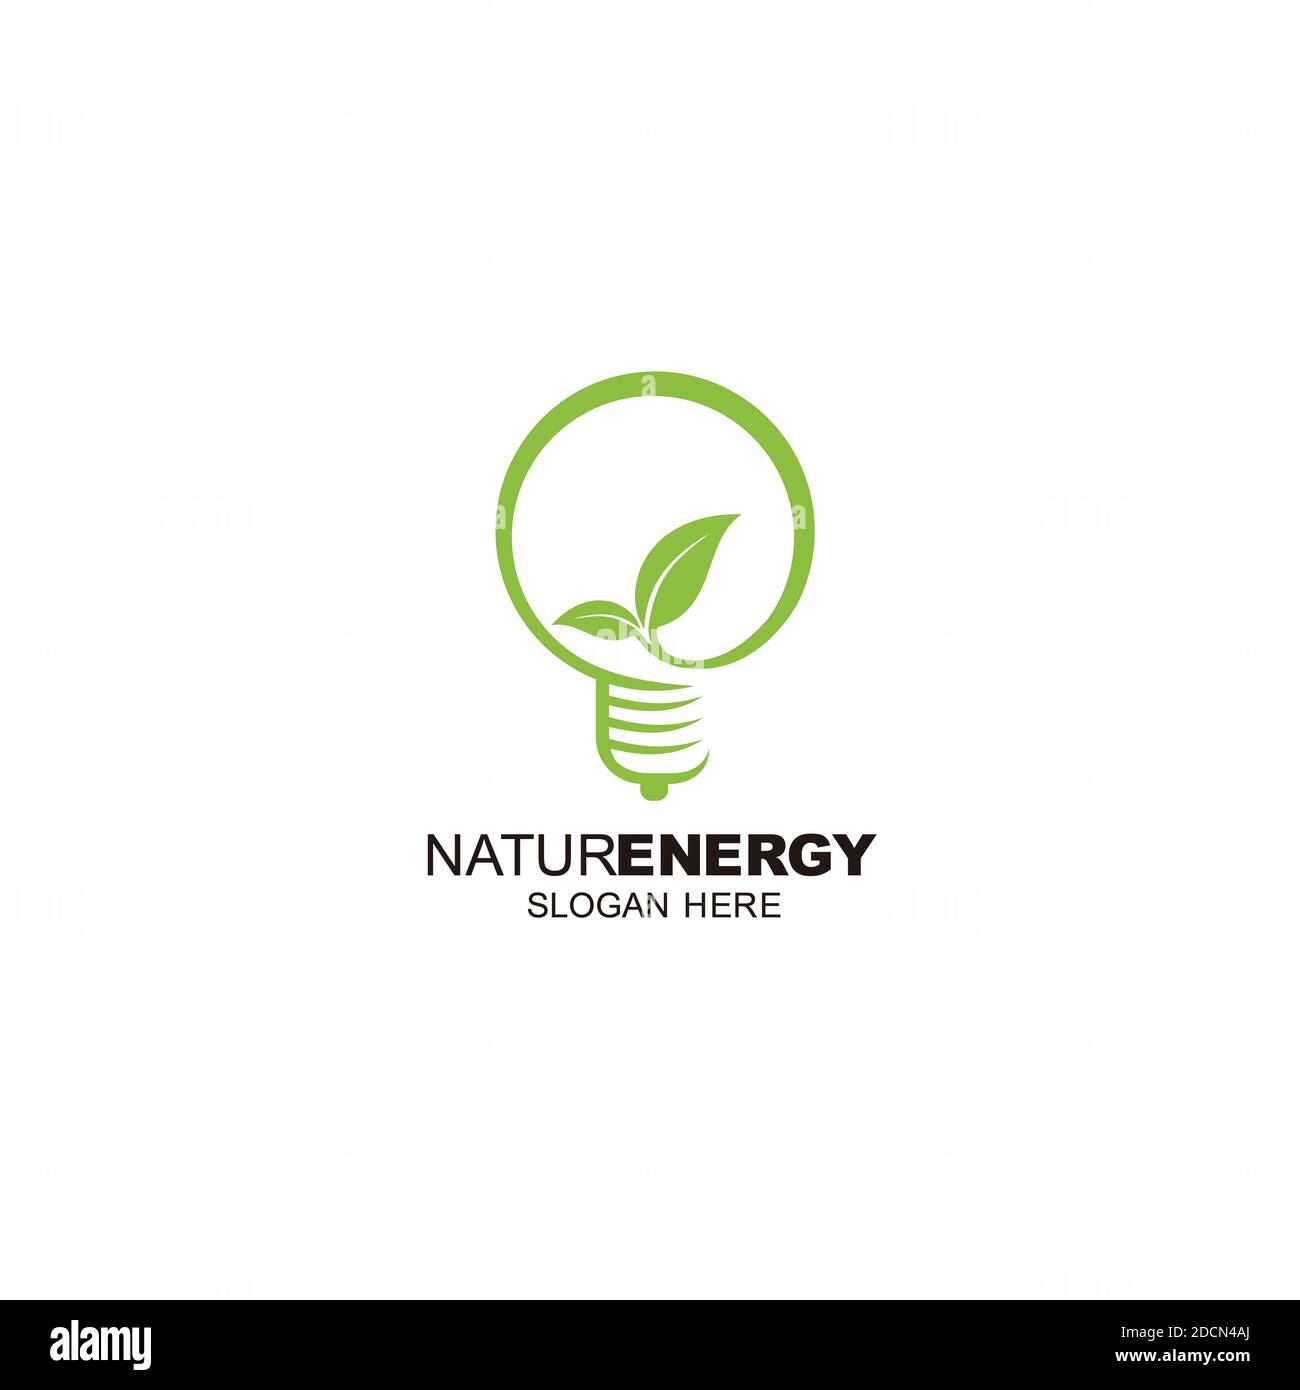 leder plantageejer Dam symbol icon nature energy logo design inspiration Stock Photo - Alamy